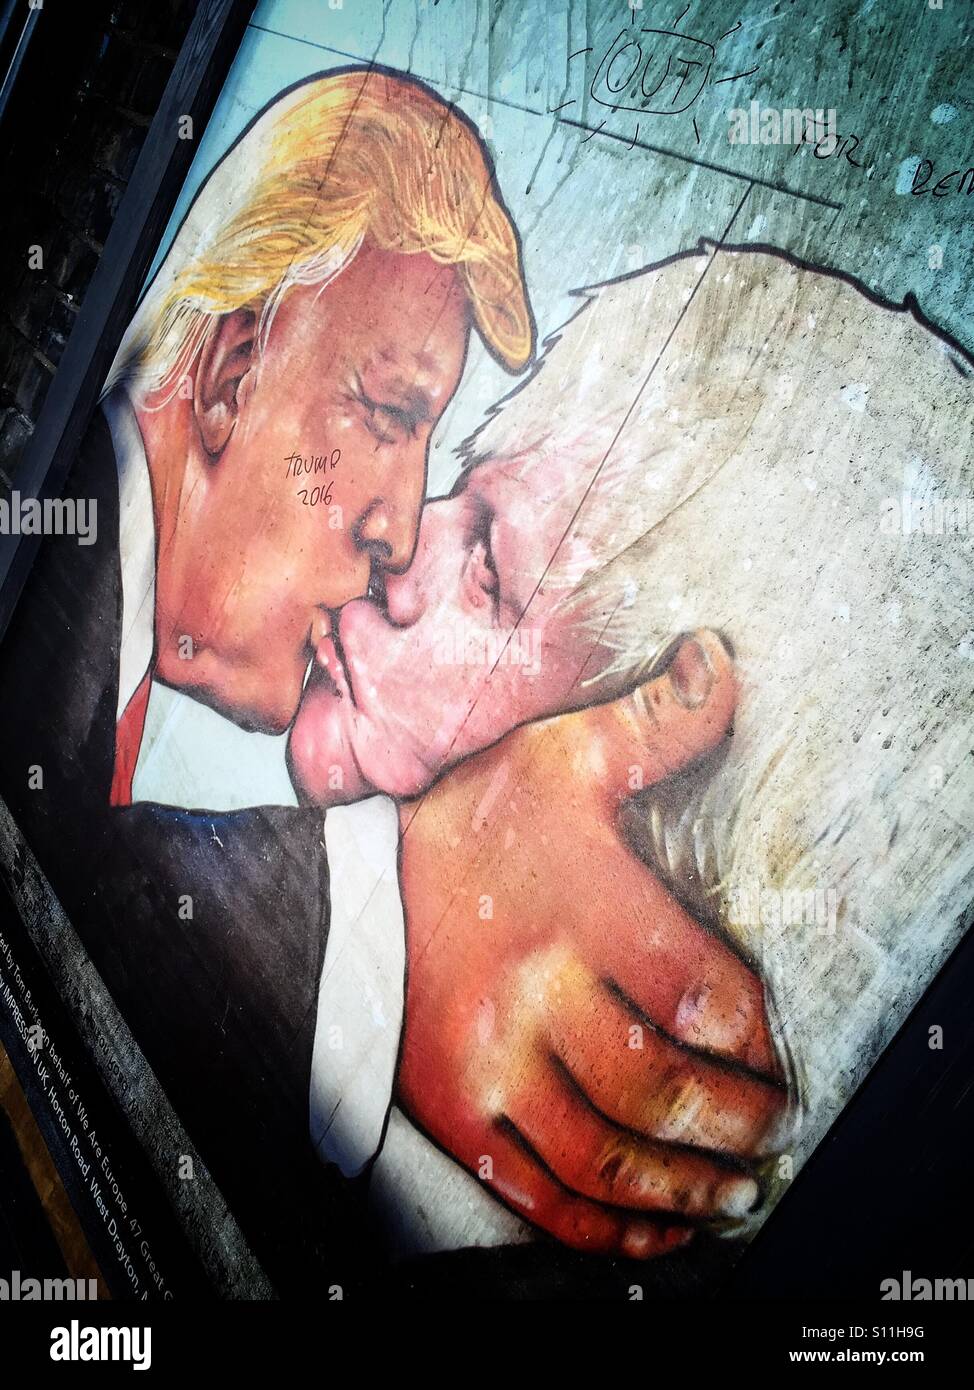 Boris Johnson und Donald Trump küssen. Eine symbolische Plakat für die Kampagne zur Abstimmung bleiben in der EU im britischen Referendum. Harringay, green Lanes, London, Vereinigtes Königreich (16. Juni) Stockfoto